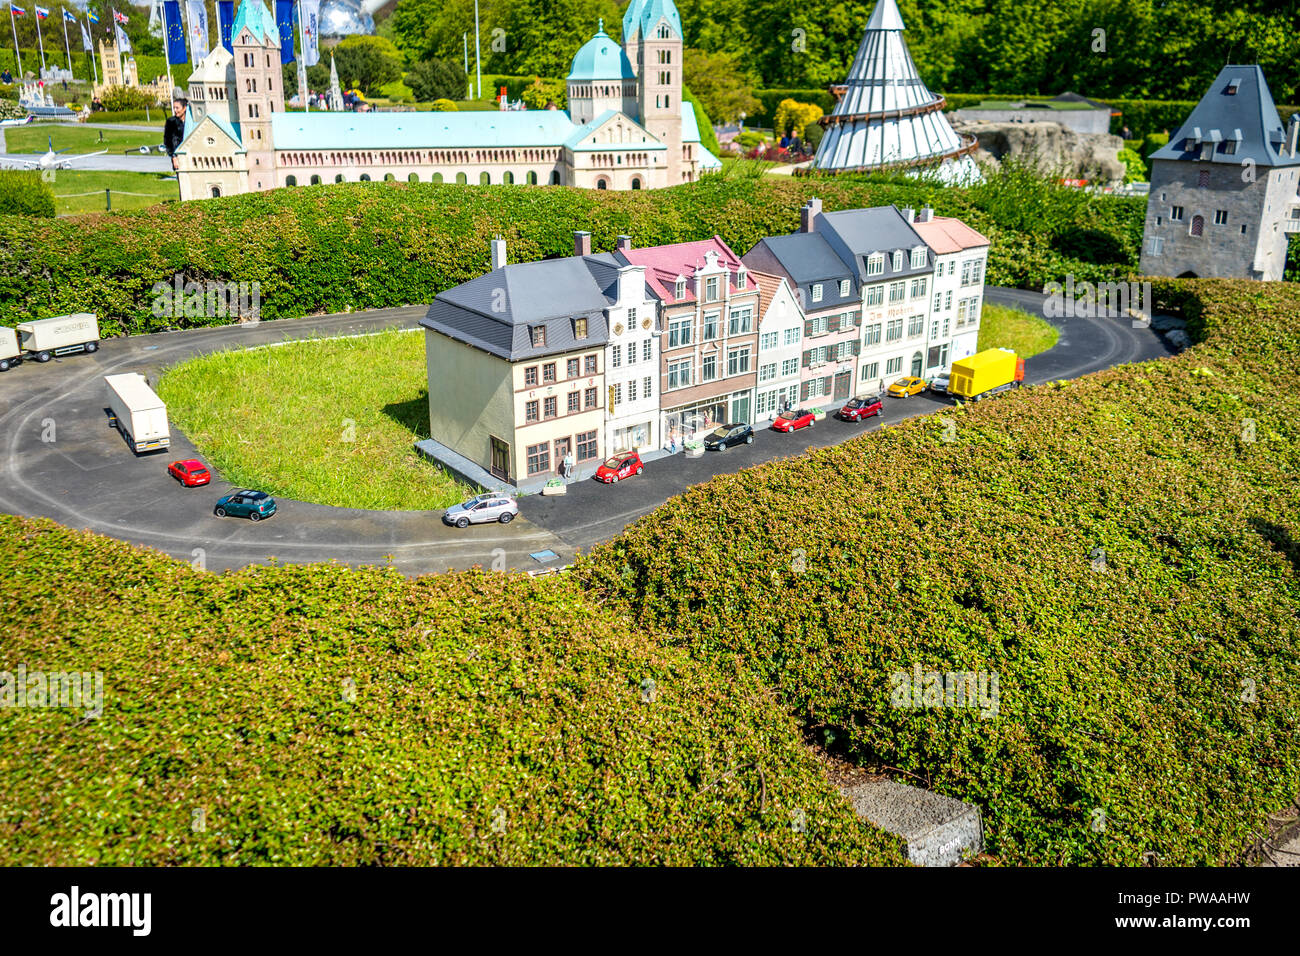 Bruxelles, Belgique - 17 Avril 2017 : Miniatures au parc Mini-Europe - reproduction de la maison de Beethoven, Bonngasse, Bonn, Germany, Europe Banque D'Images